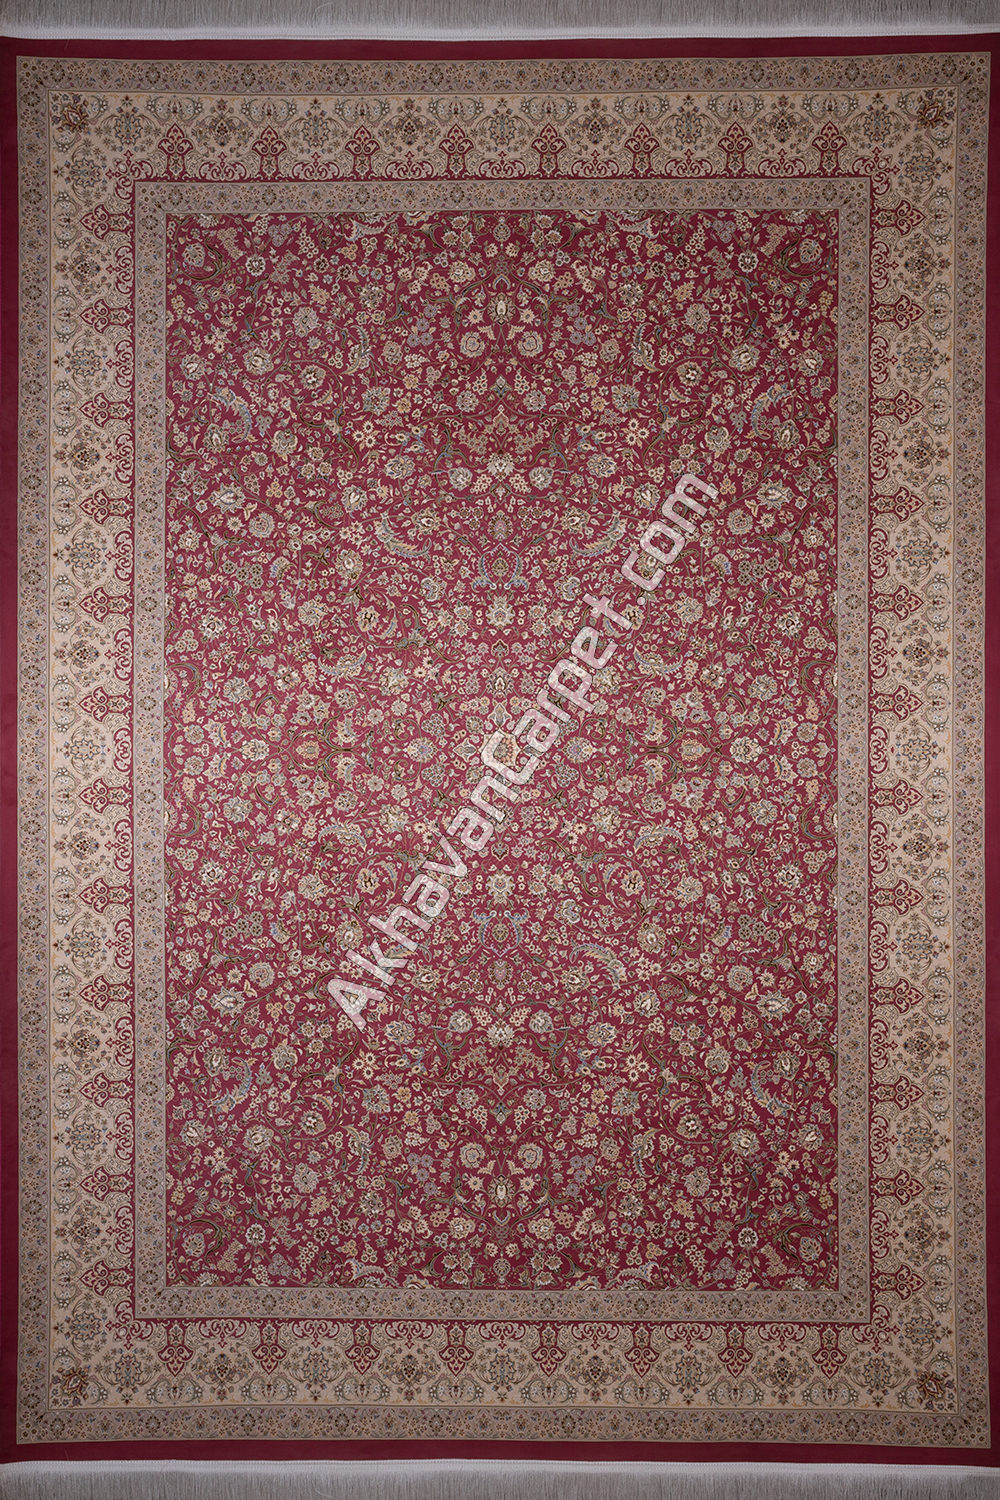 persian red classic carpet model ke0115009